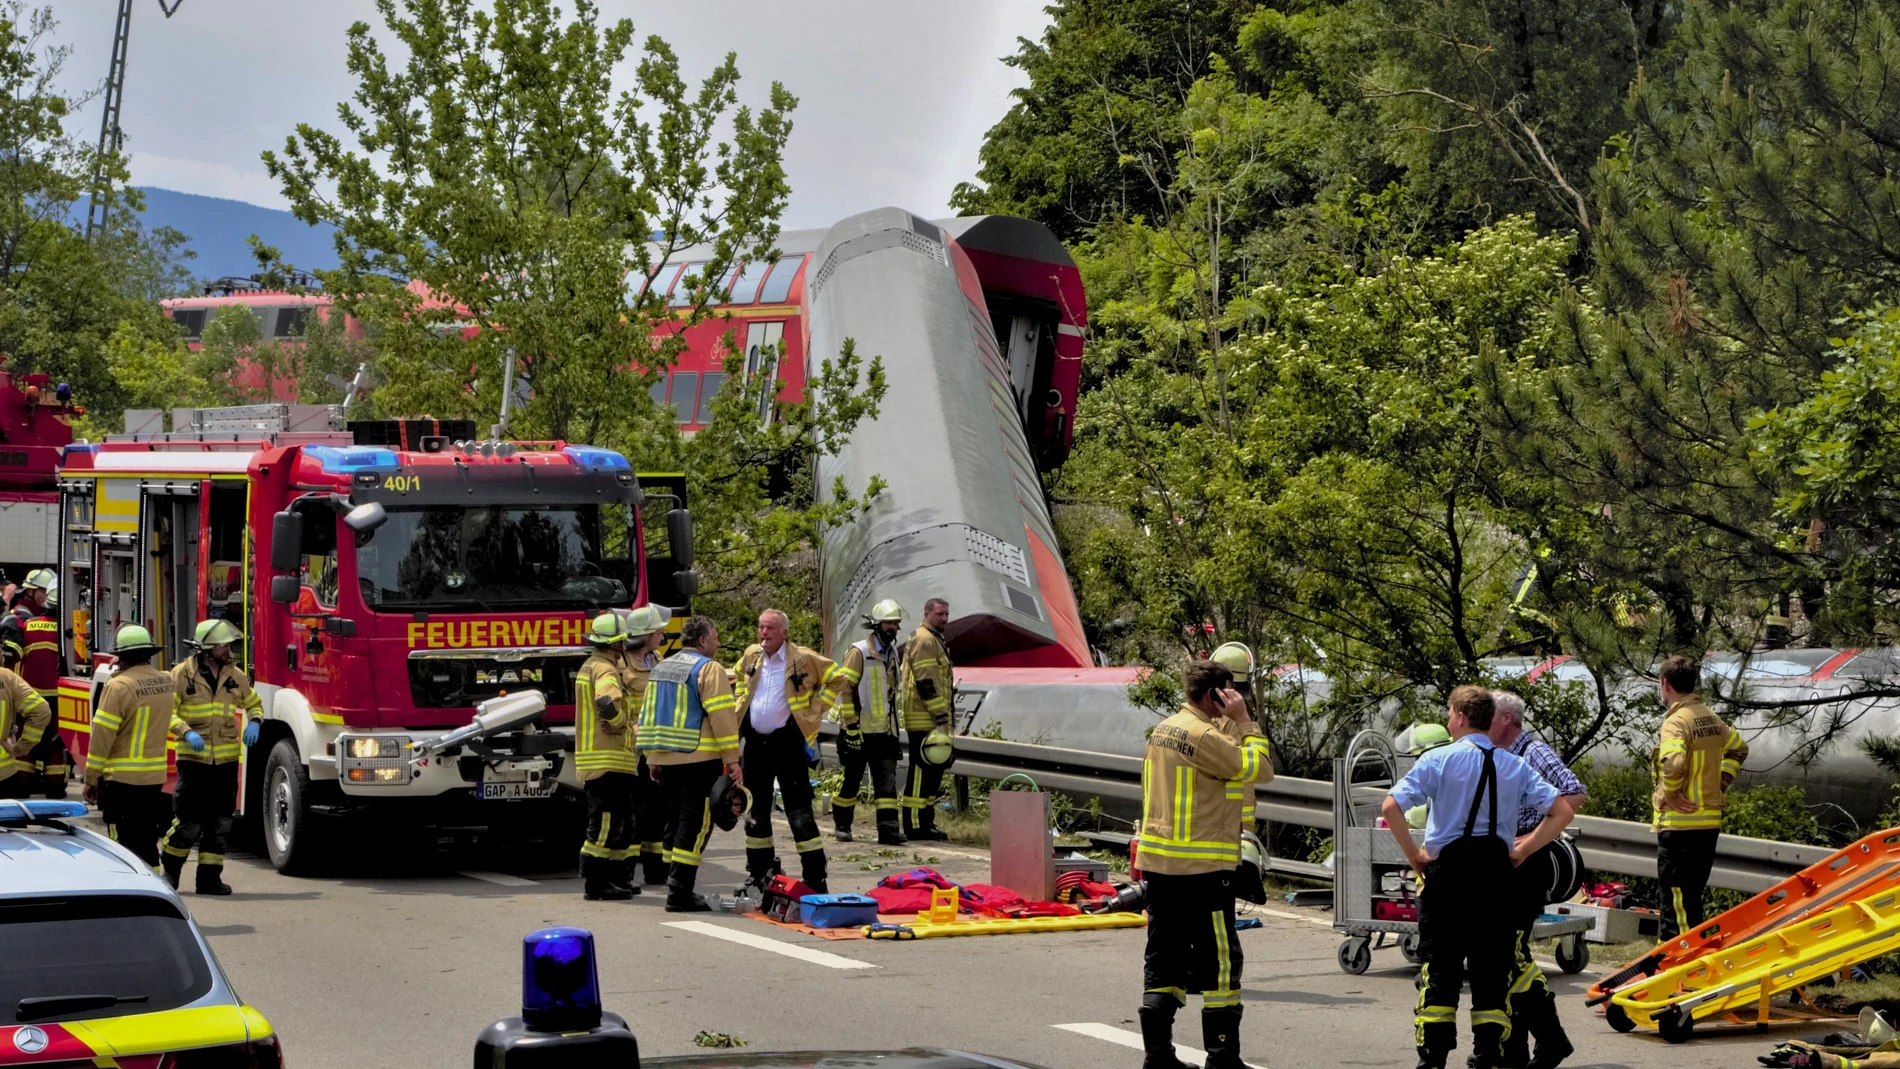 Vehículos de emergencia en el lugar en el que se ha producido el accidente, Garmisch-Partenkirchen